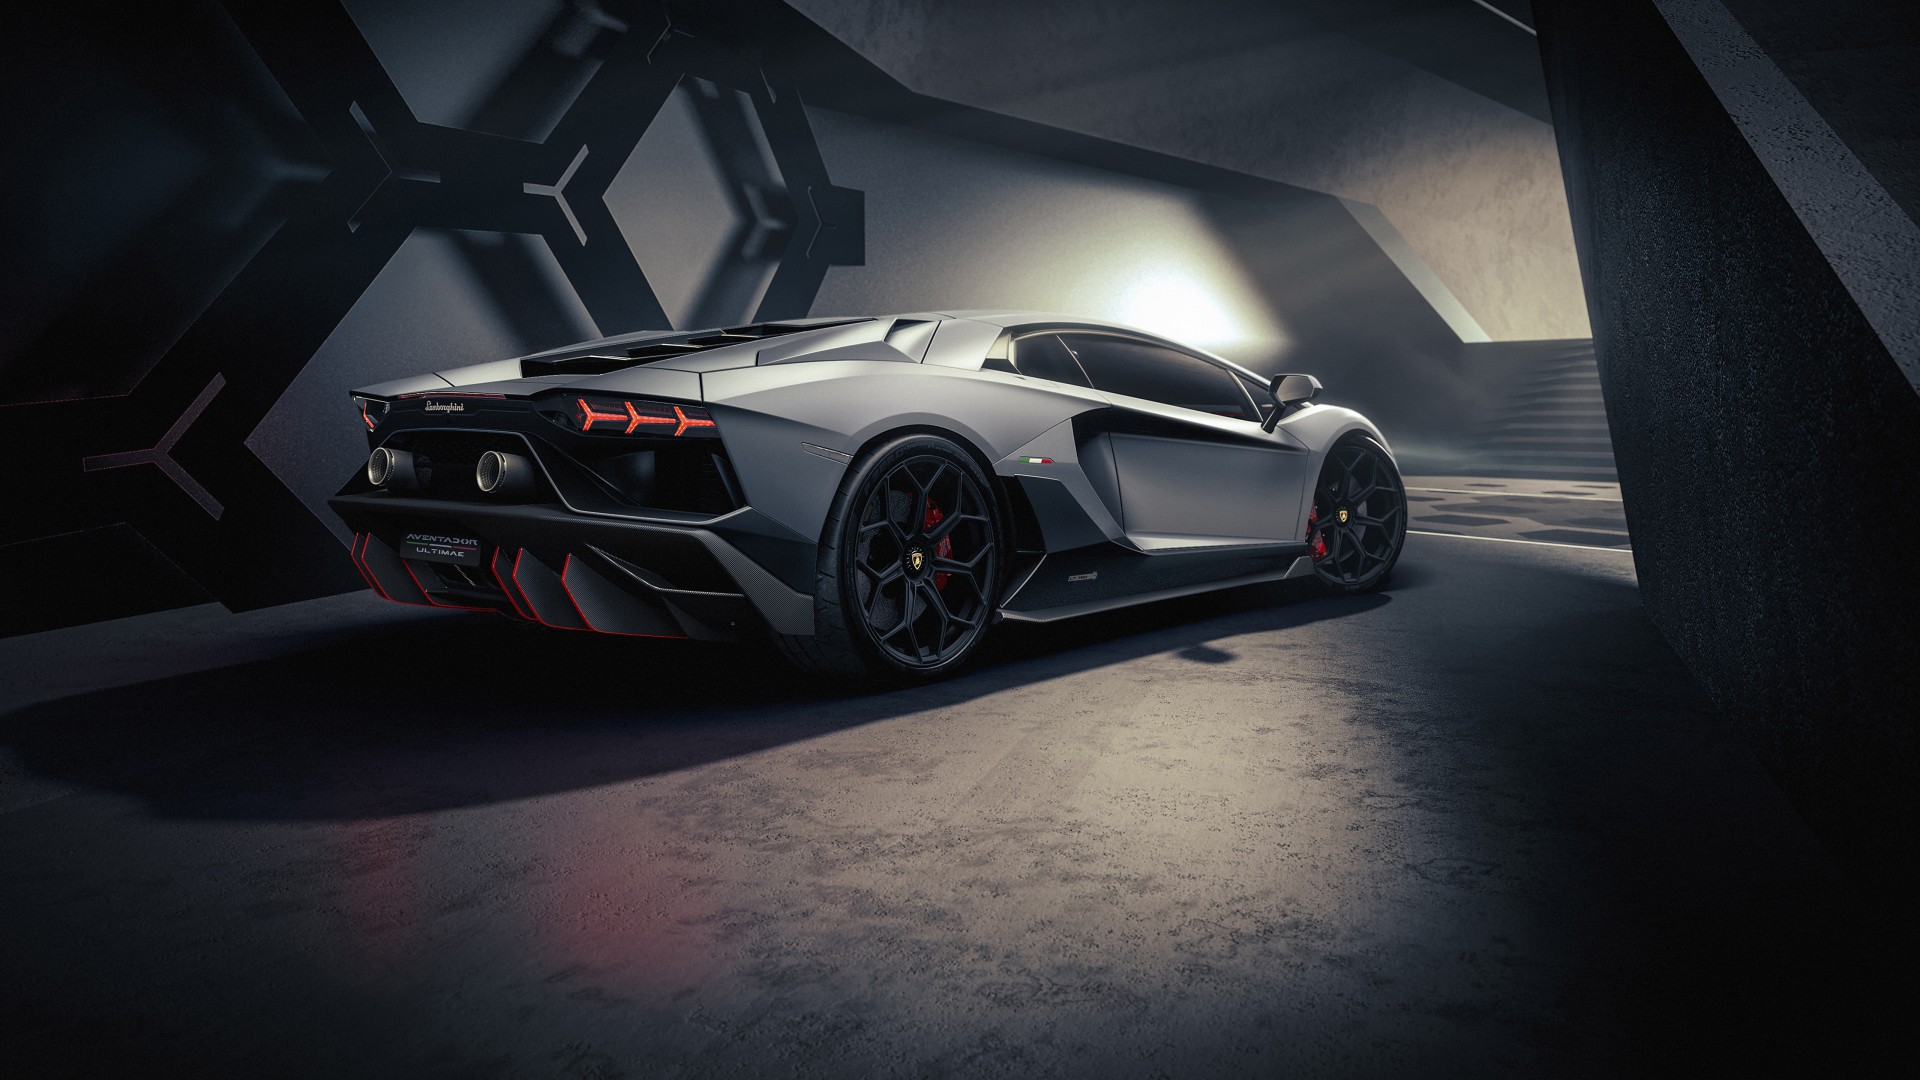 Lamborghini Aventador là mẫu siêu xe đỉnh cao của thương hiệu Lamborghini. Một chiếc xe cực kì sang trọng, tinh tế với thiết kế hầm hố và đầy sức mạnh. Hãy xem hình ảnh của Lamborghini Aventador để thấy được vẻ đẹp tuyệt vời của dòng siêu xe này.